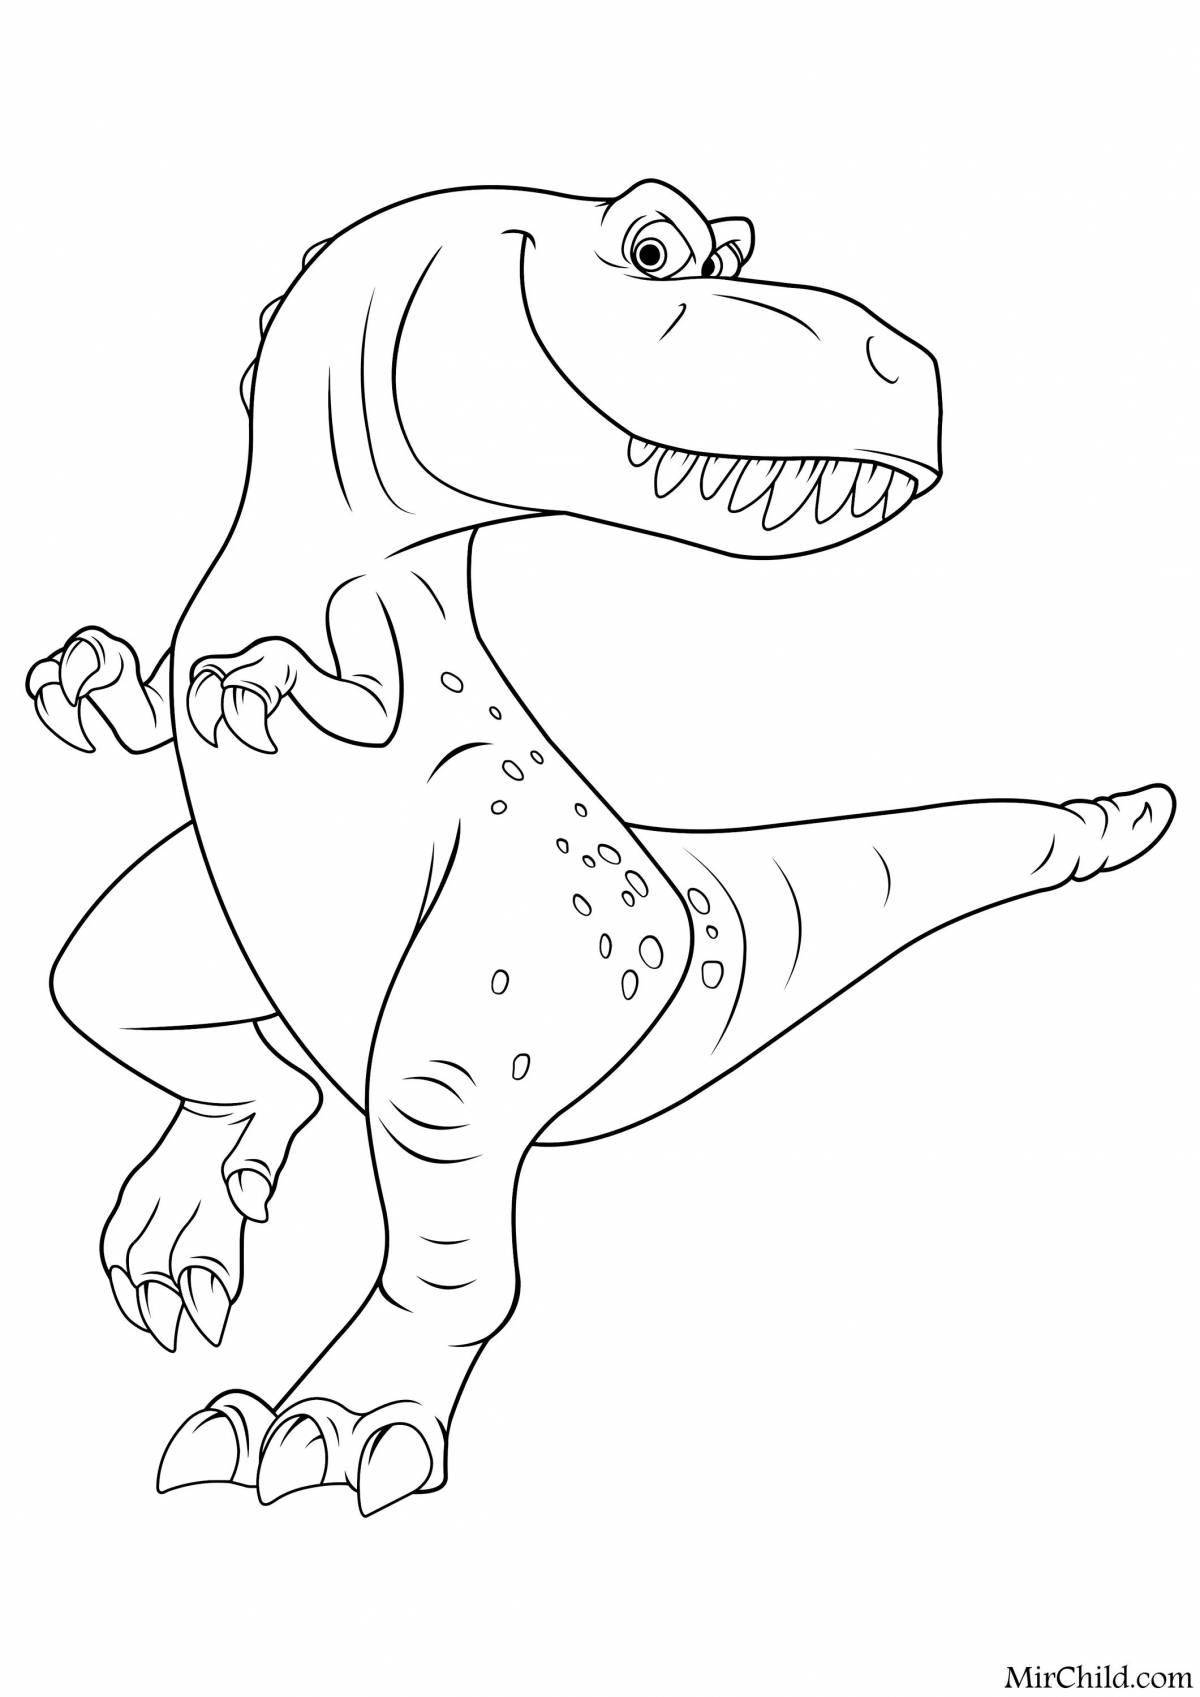 Marvelous coloring tarbosaurus forward